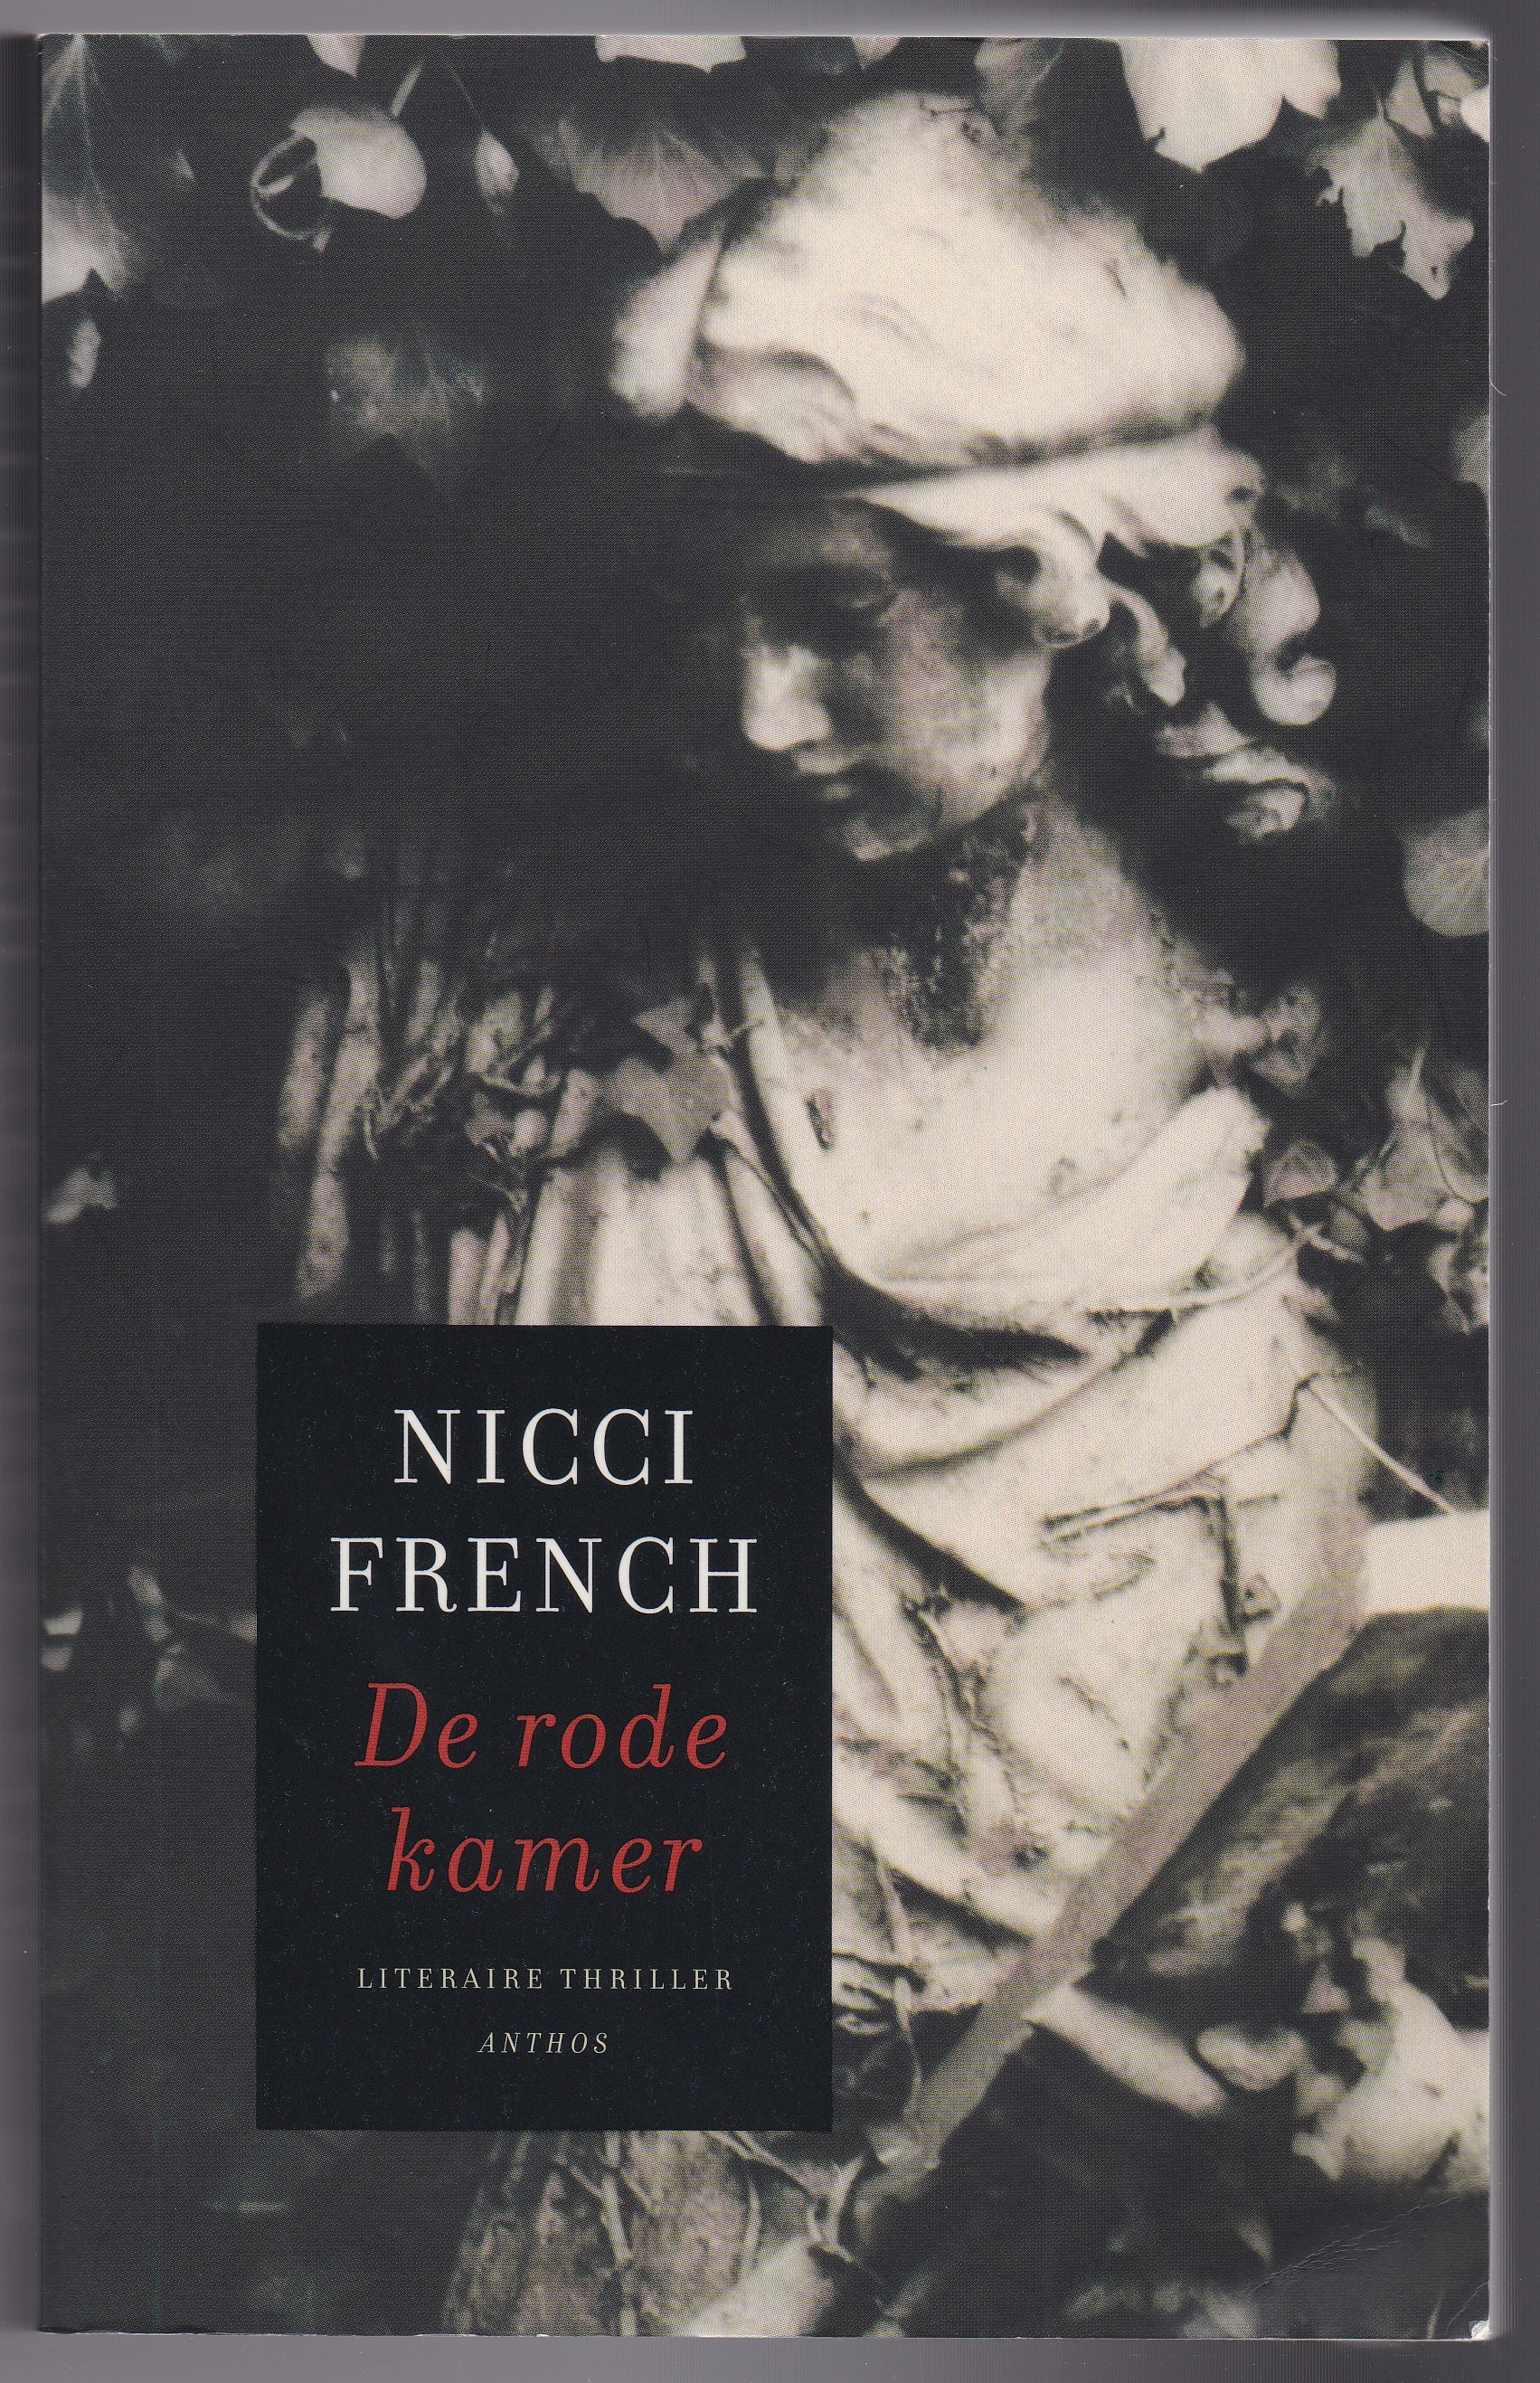 French, Nicci - De rode kamer. Literaire thriller. Vertaald door Molly van Gelder en Eelco Vijzelaar